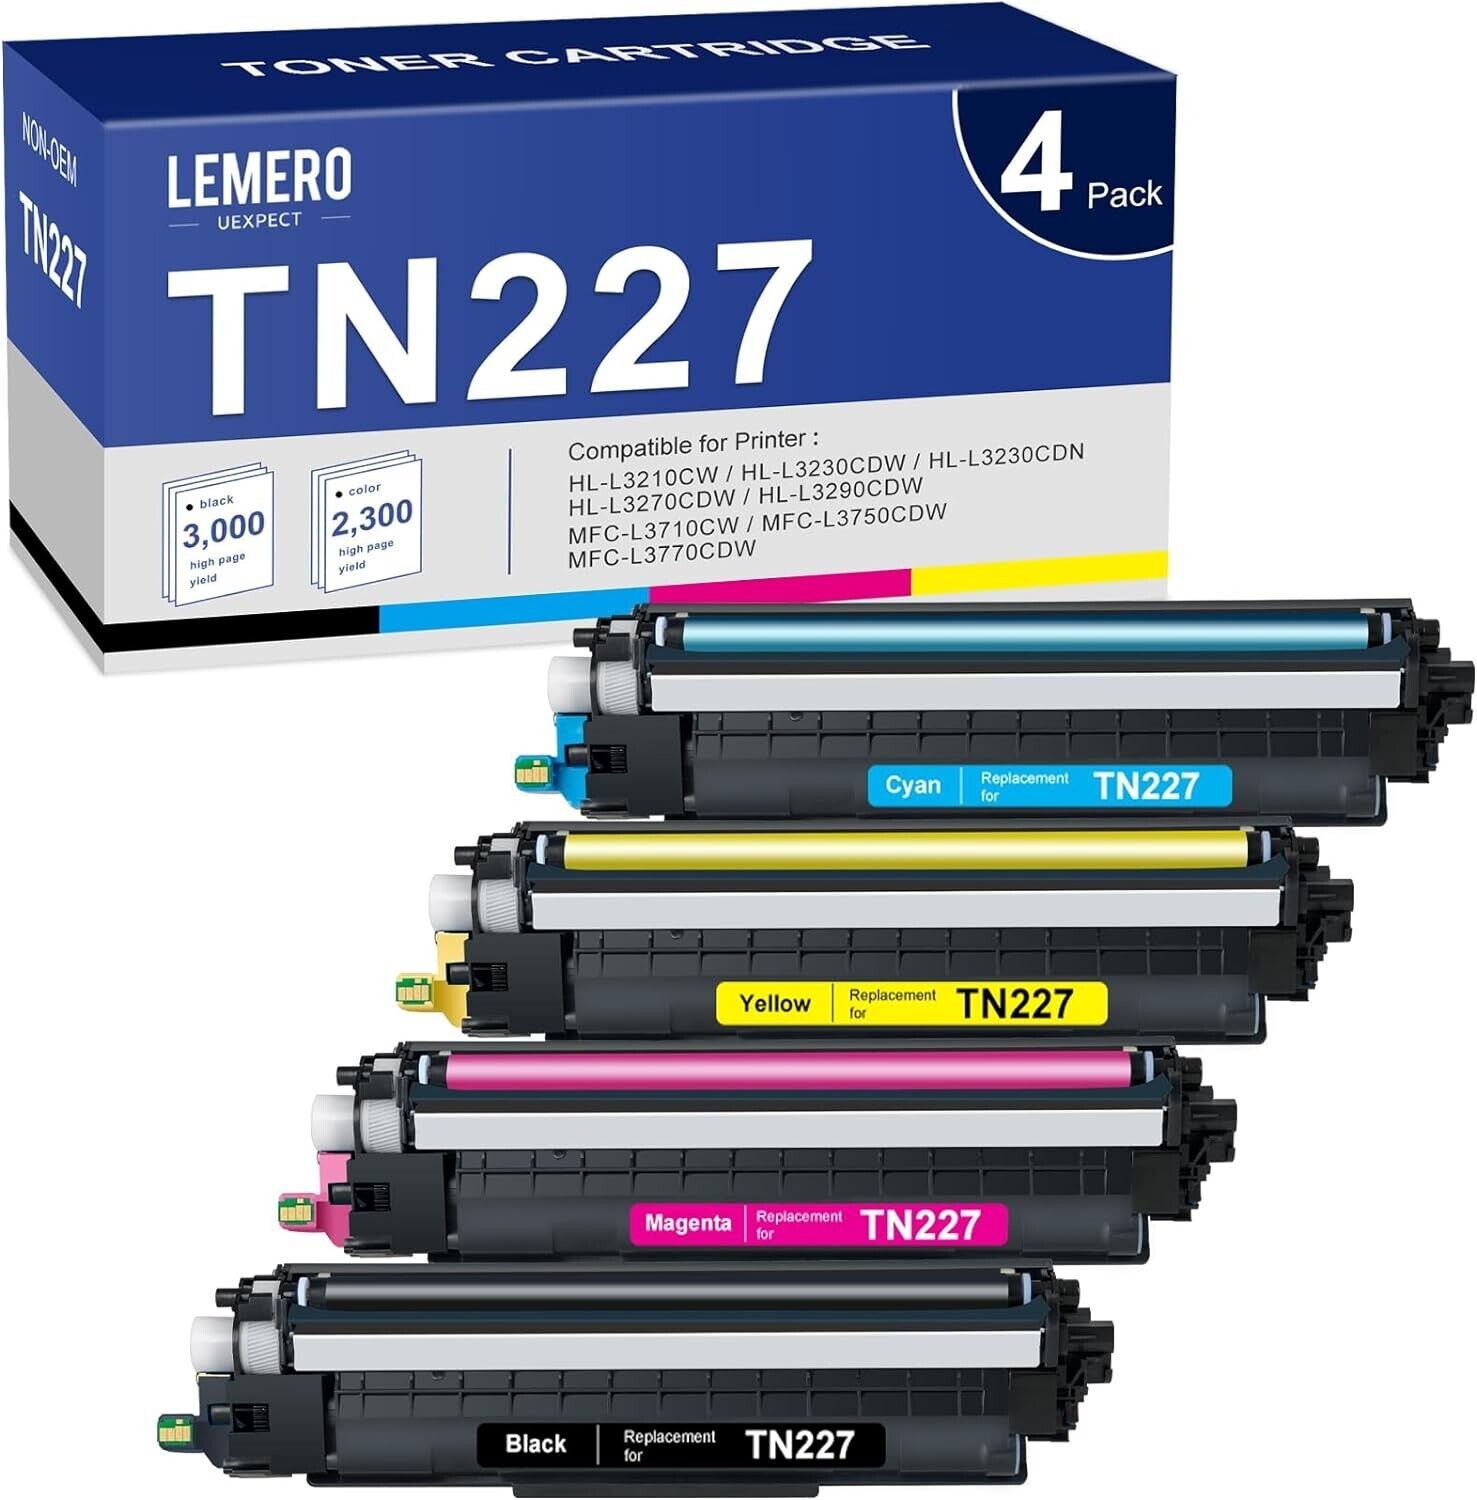 LEMERO UEXPECT TN227 Toner Cartridge, Open Boxe